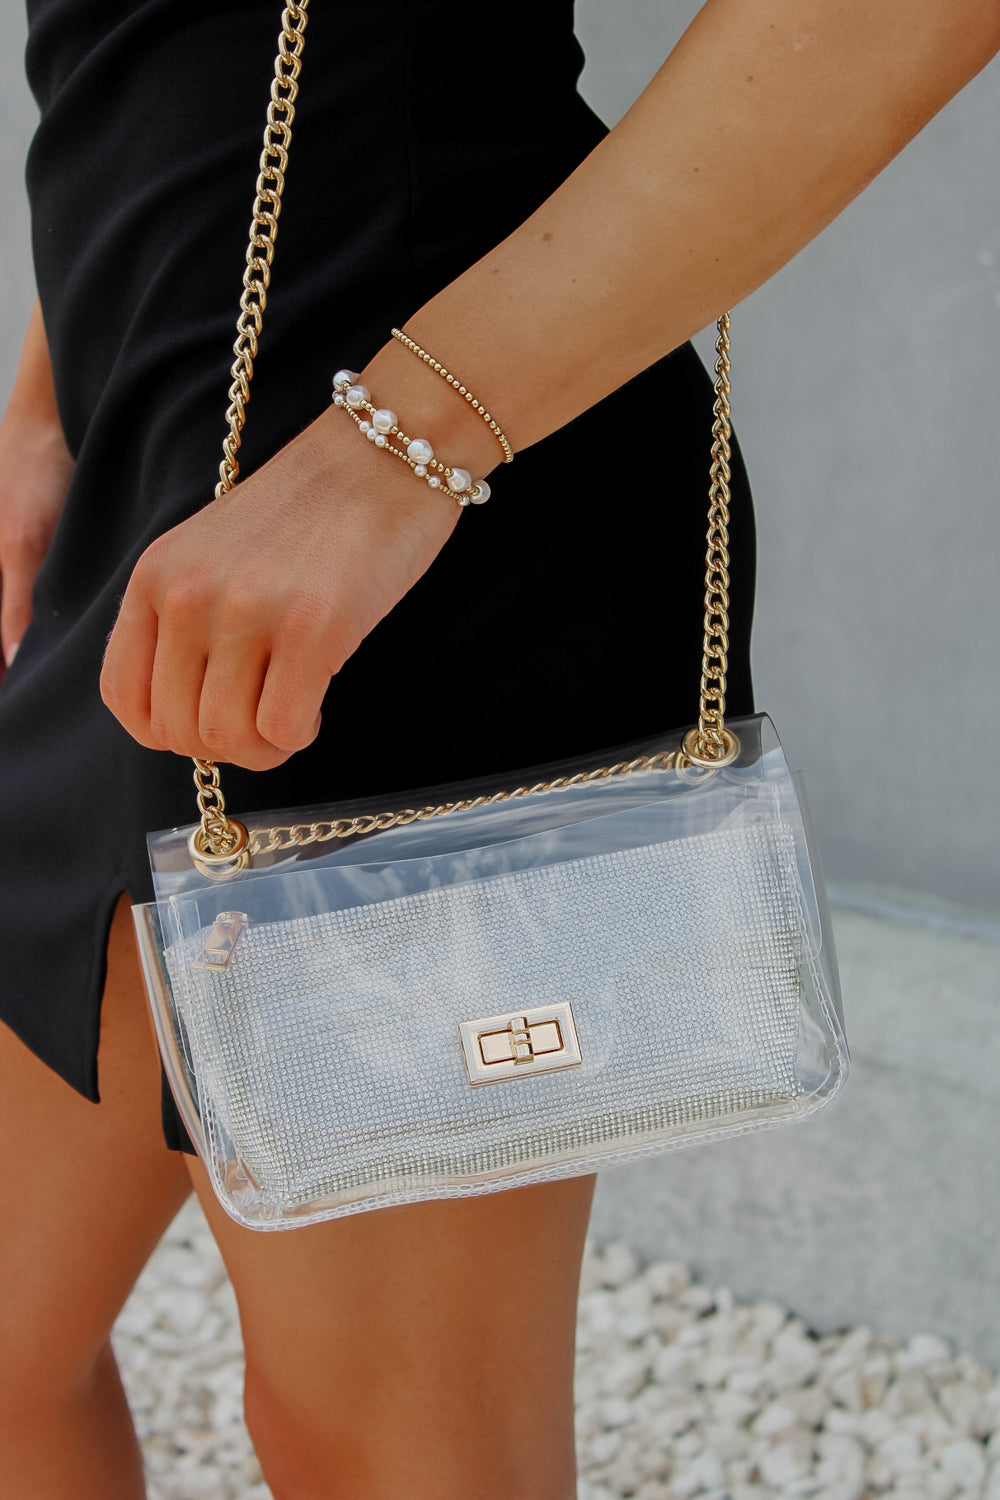 A Classy Look Clear Bag With Rhinestone Clutch - Clear | Makk Fashions